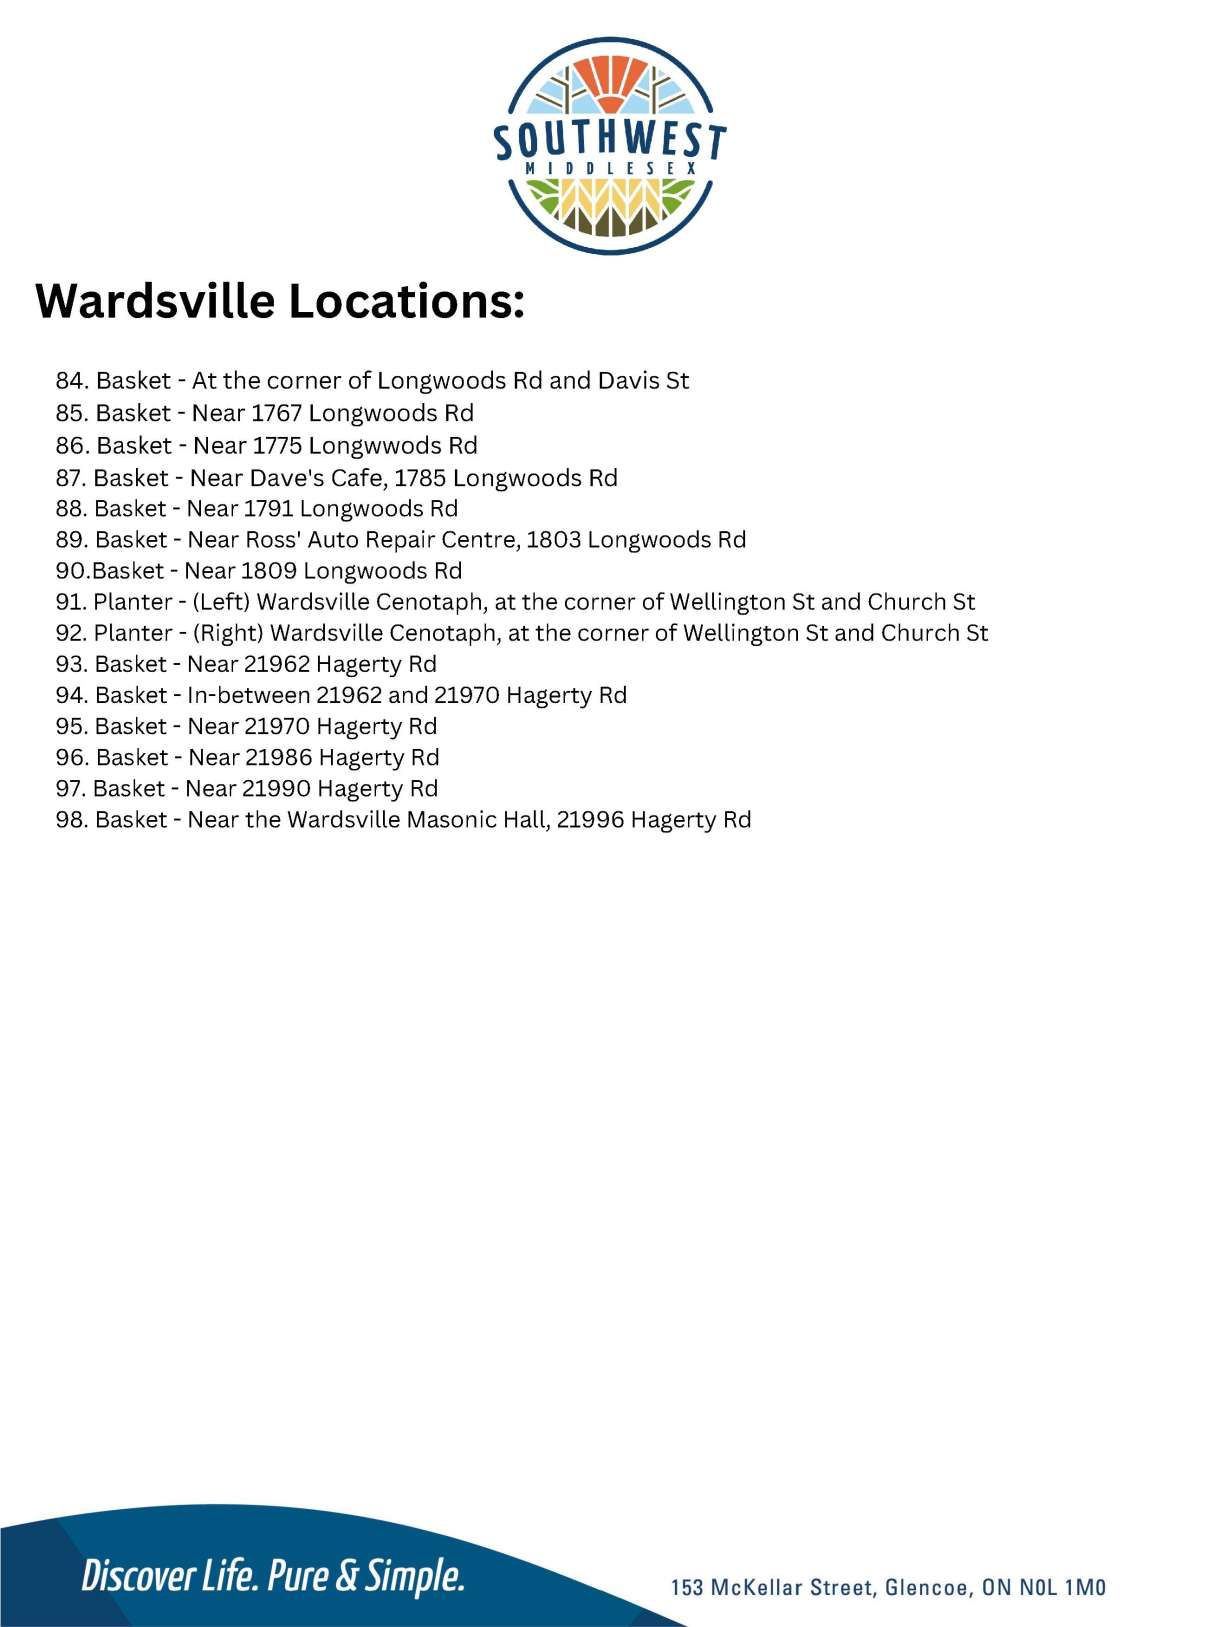 Wardsville Flower Basket Locations